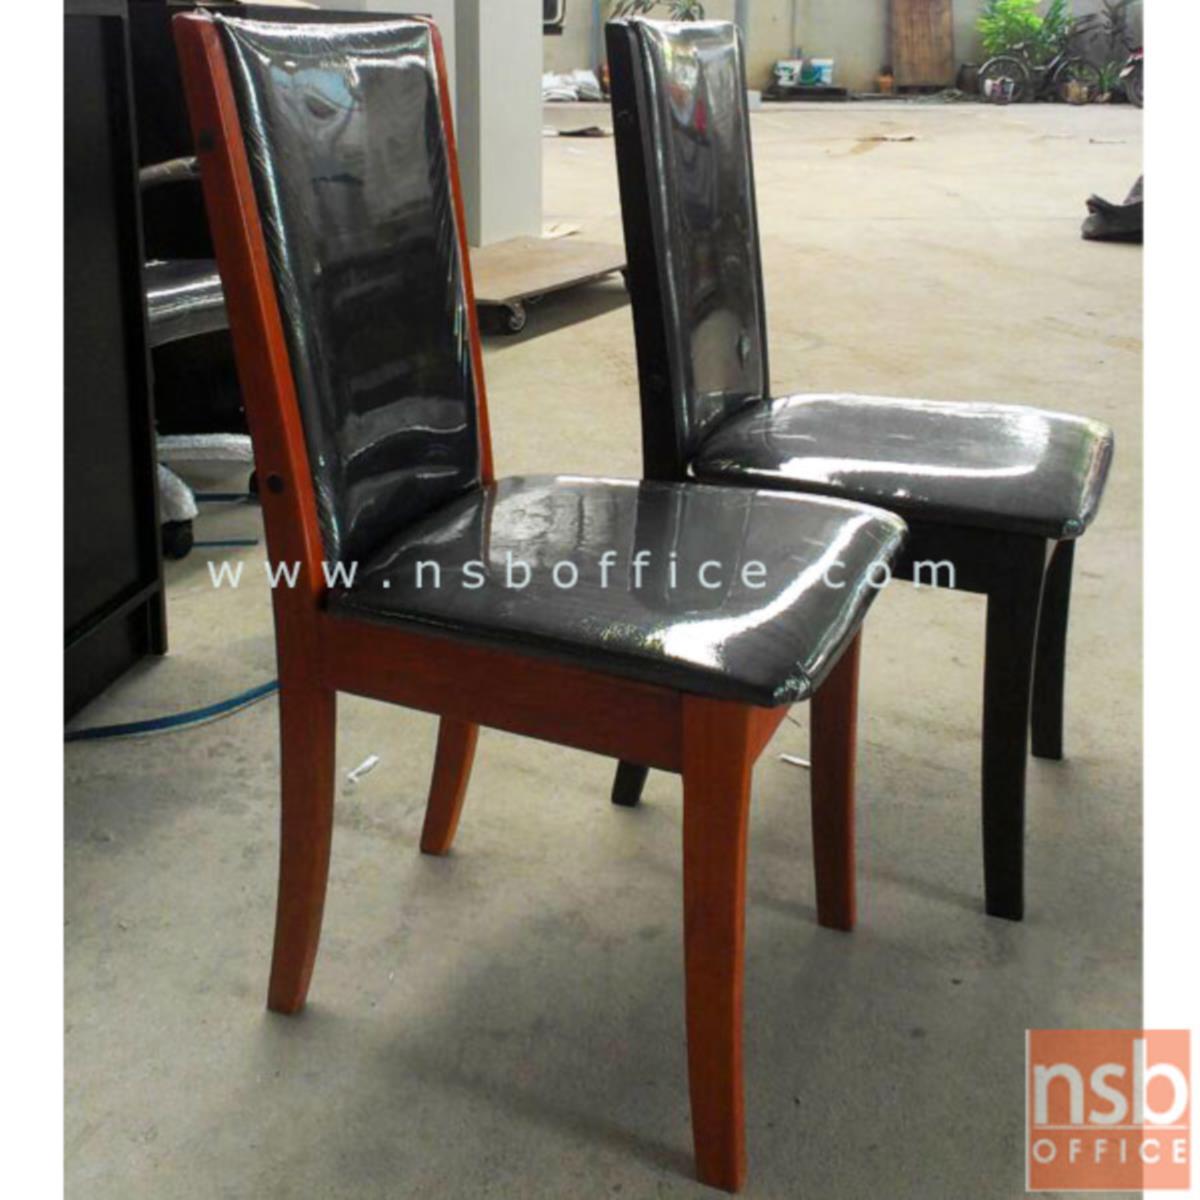 G14A060:เก้าอี้ไม้ยางพาราที่นั่งหุ้มหนังเทียม รุ่น Soren (โซเรน) ขาไม้ยางพารา 